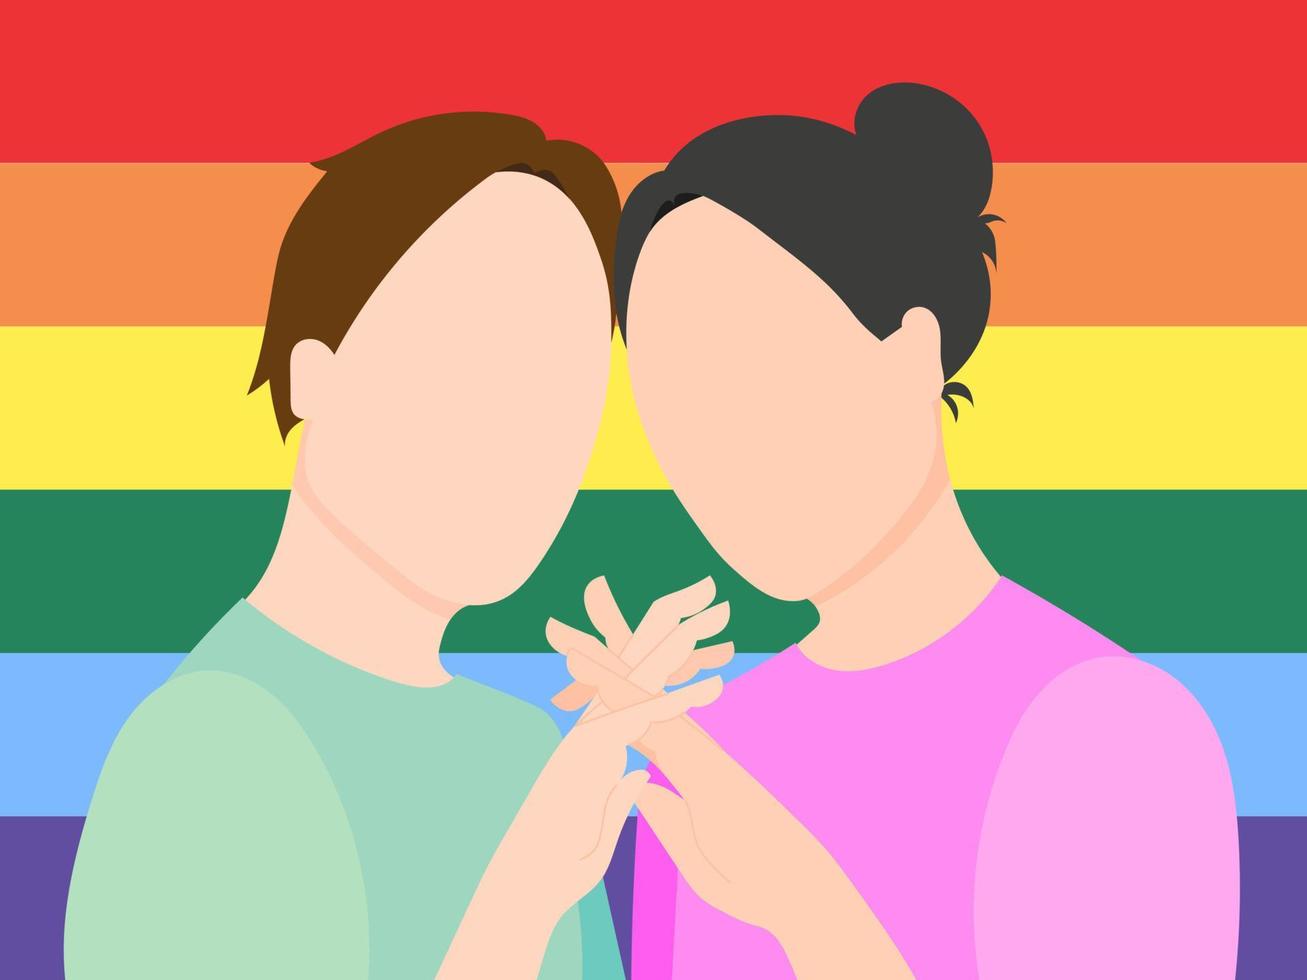 una pareja gay enamorada tomándose de la mano contra el fondo de una bandera lgbt. ilustración vectorial plana. vector